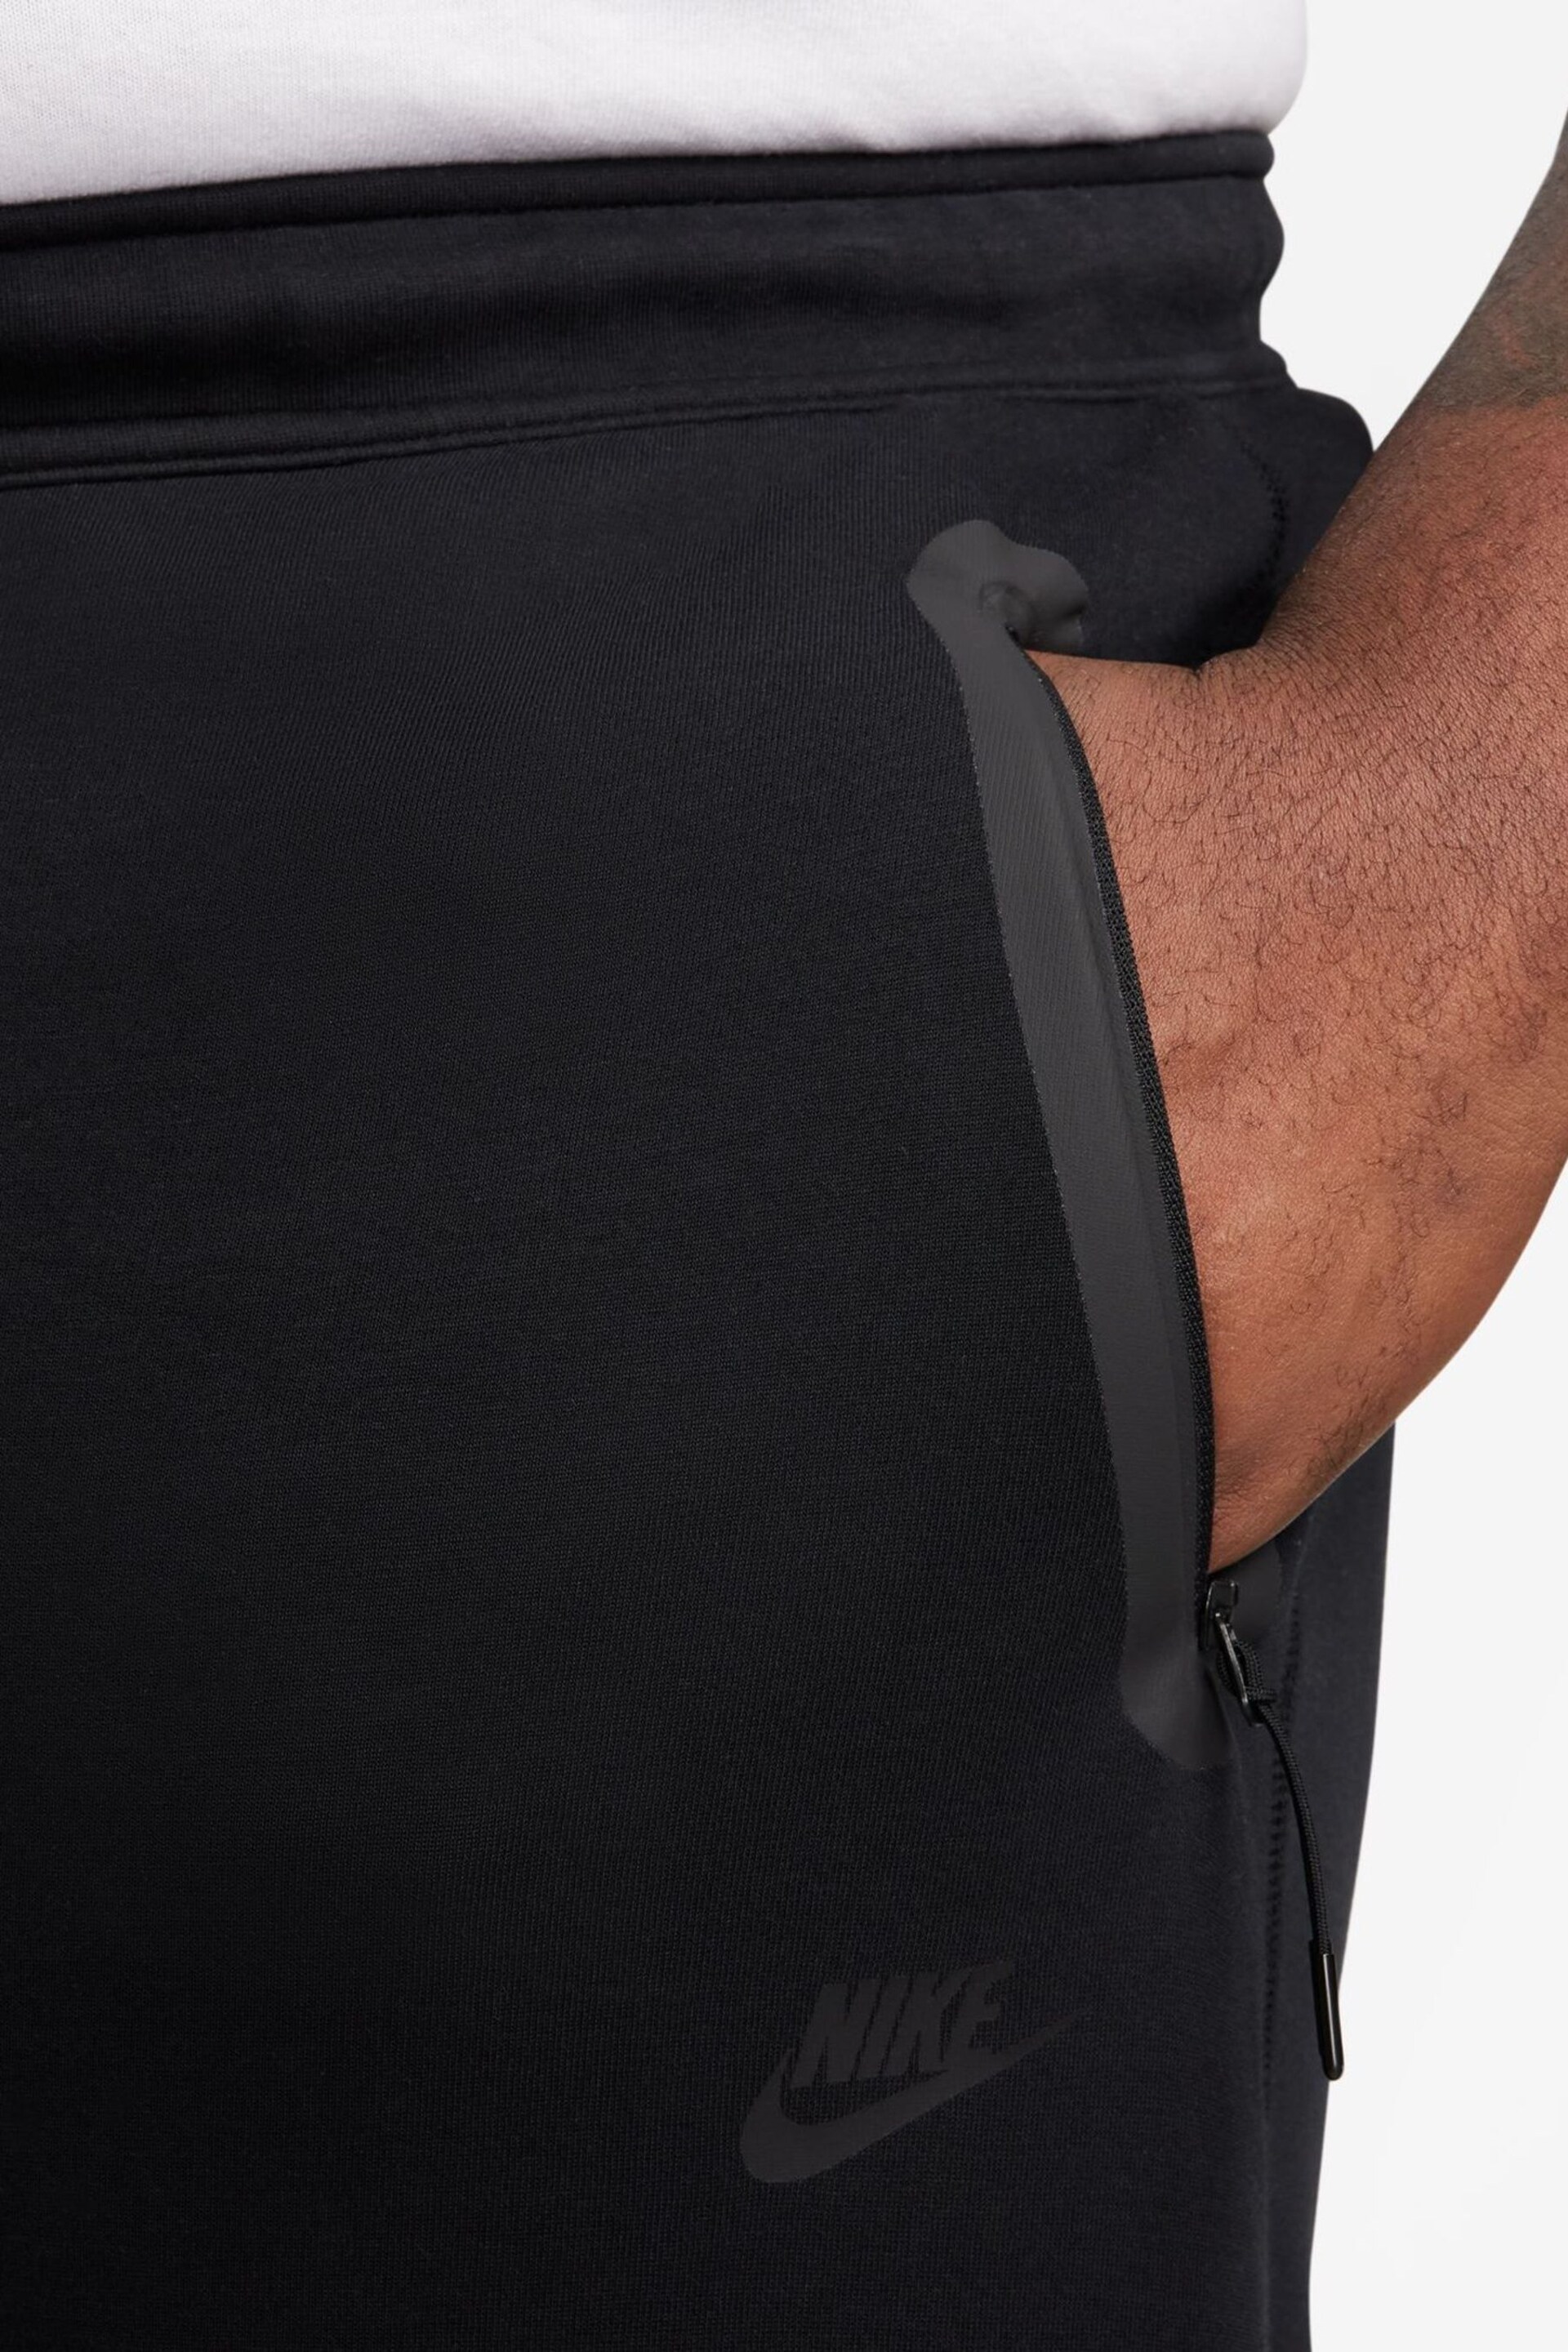 Nike Black Tech Fleece Open Hem Joggers - Image 8 of 13